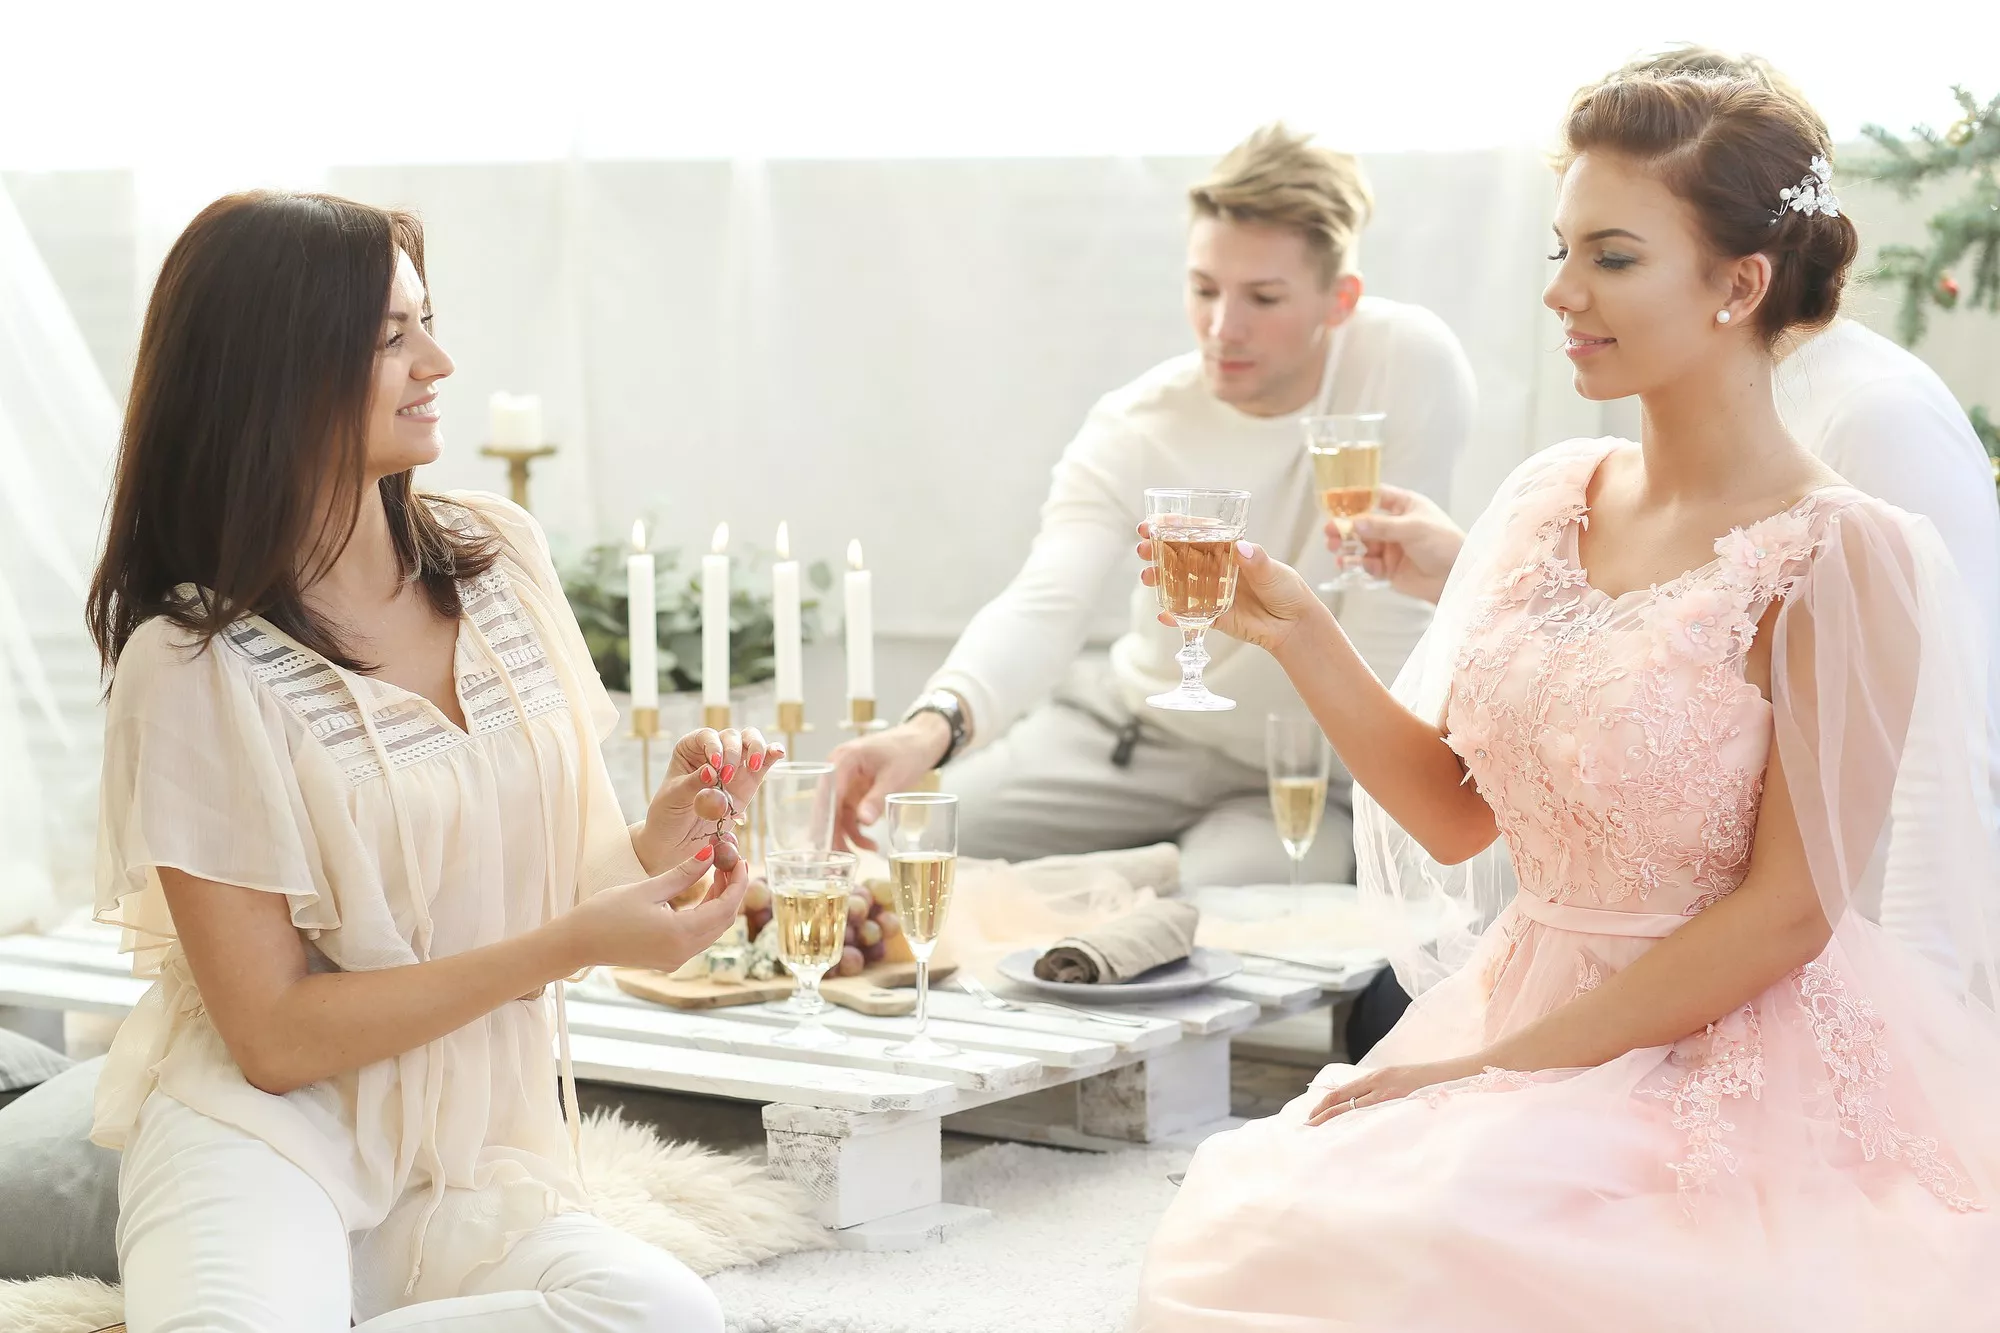 新人在婚前不建議參加其他人的婚禮，也是登記結婚禁忌之一。